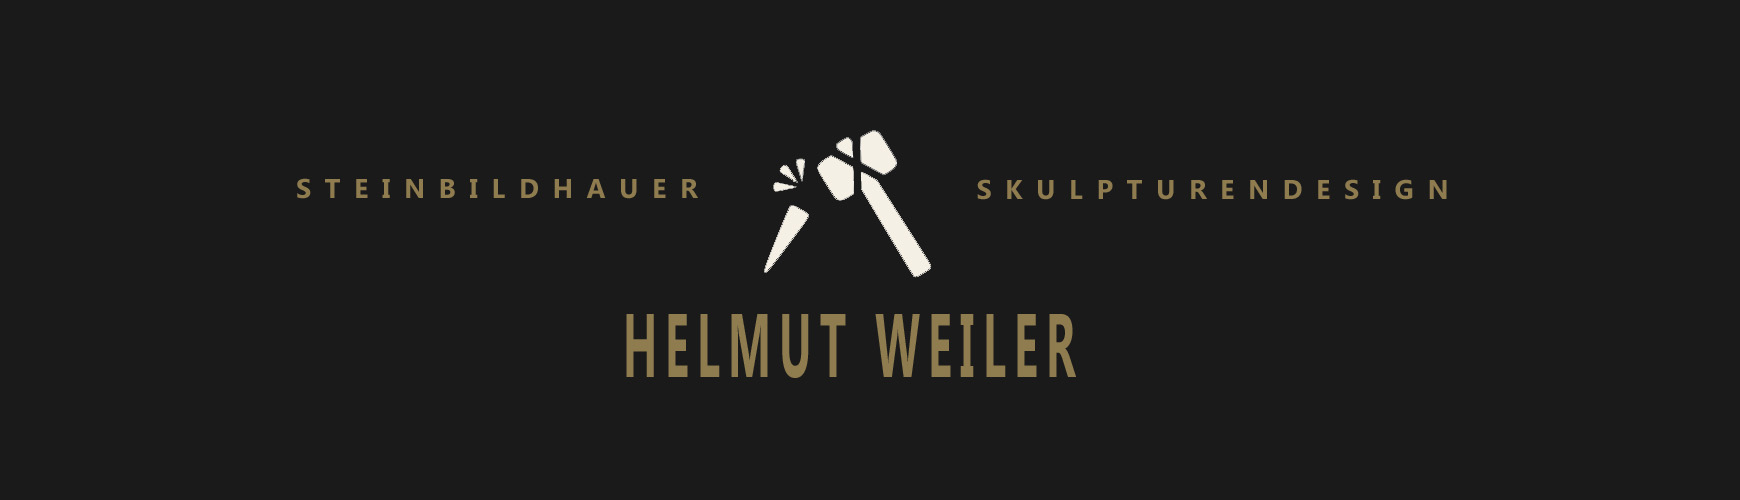 Helmut Weiler. Steinbildhauer und Skulpturendesign